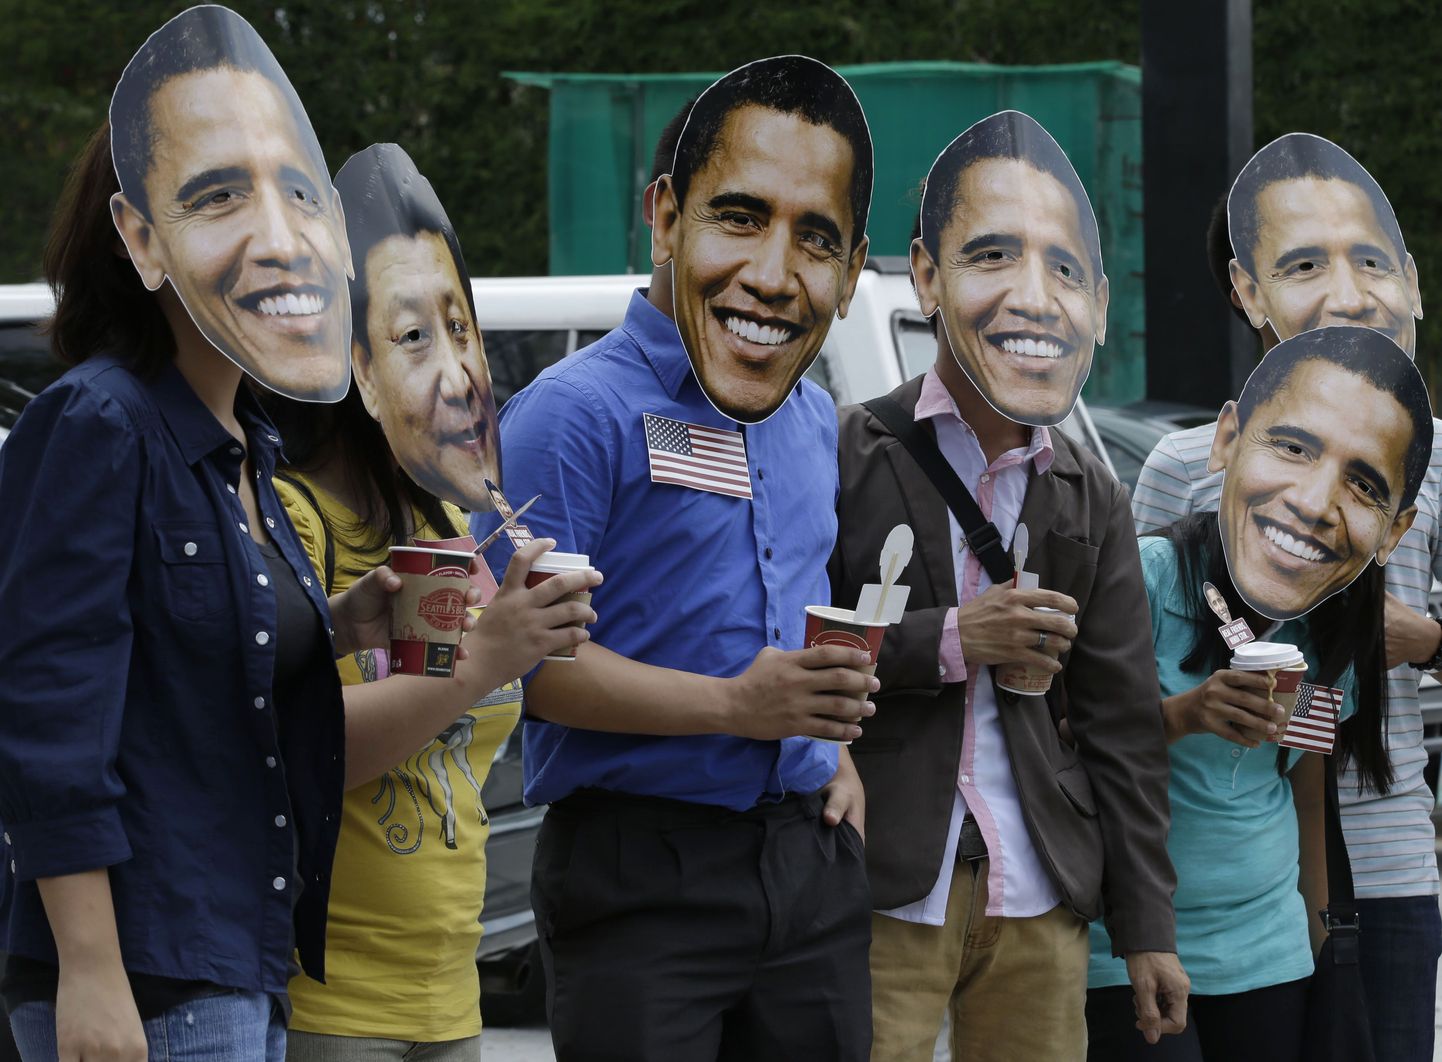 Manilast kirdes asuvas Quezonis toimus täna meeleavaldus, kus kanti USA presidenti Barack Obamat ja Hiina riigipead Xi Jinpingi kujutavaid  maske.